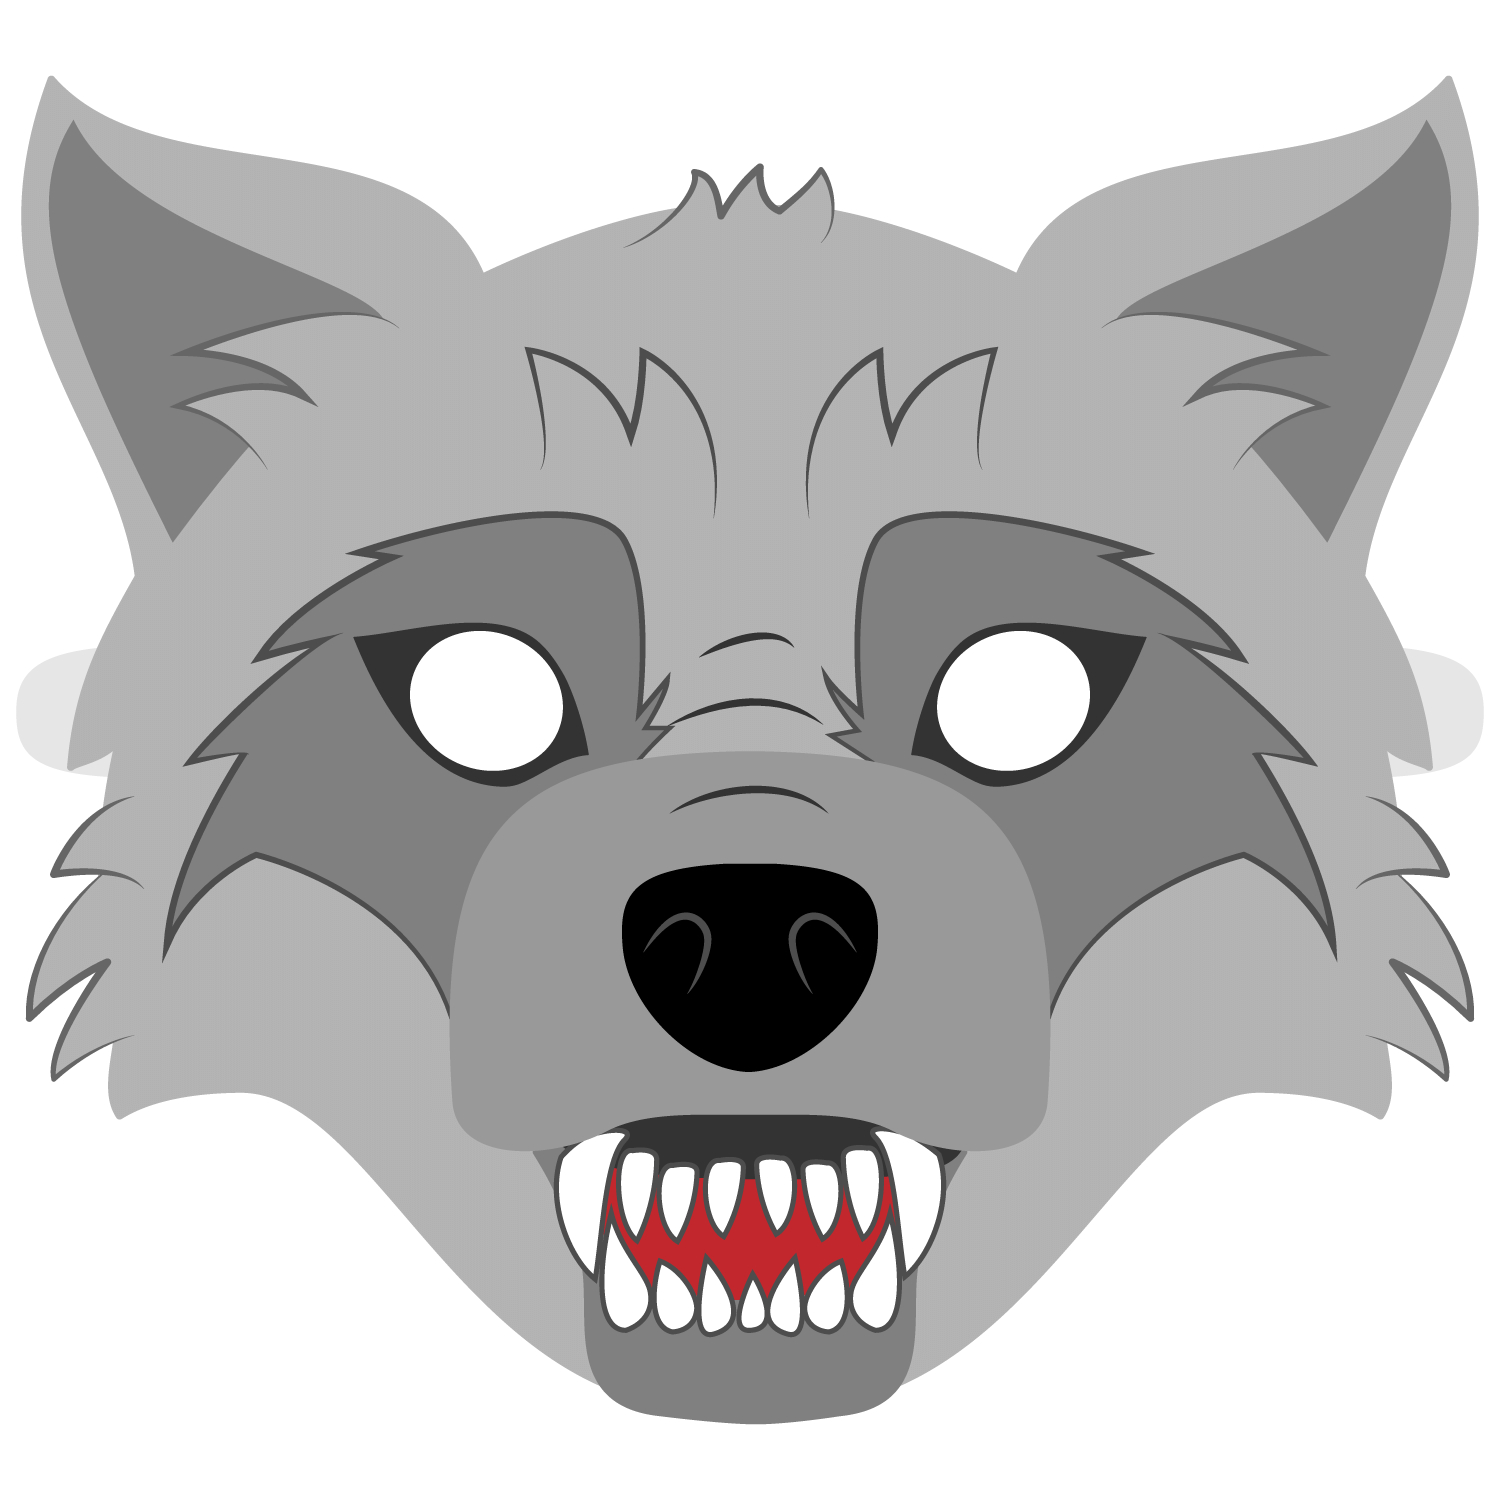 Big Bad Wolf Mask Template | Free Printable Papercraft Templates - Free Printable Wolf Face Mask